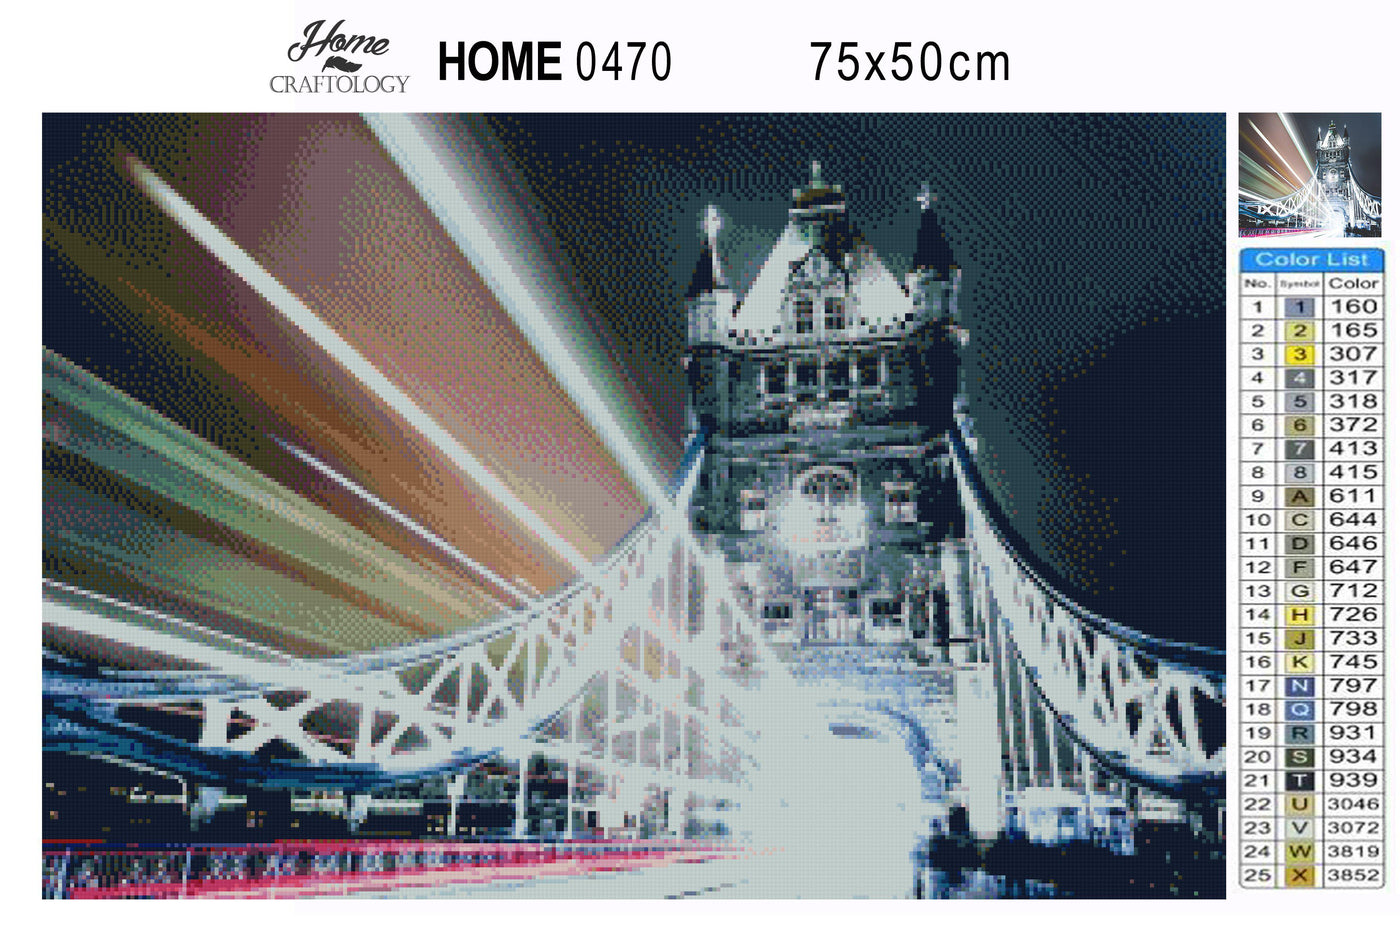 Lights on London Bridge - Premium Diamond Painting Kit